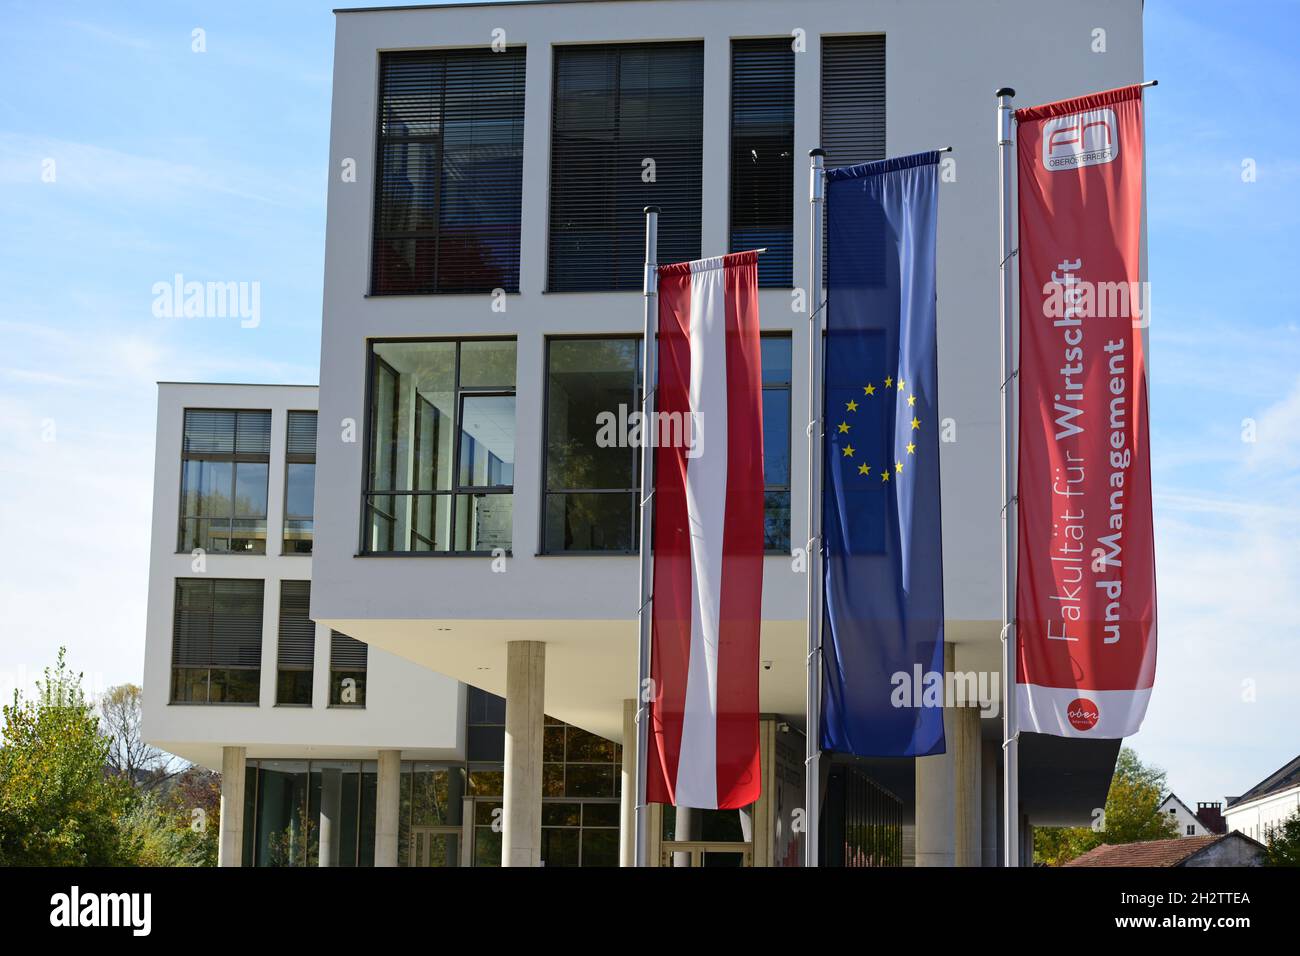 Die Fachhochschule in Steyr, Oberösterreich, Österreich, Europa - The University of Applied Sciences in Steyr, Upper Austria, Austria, Europe Stock Photo